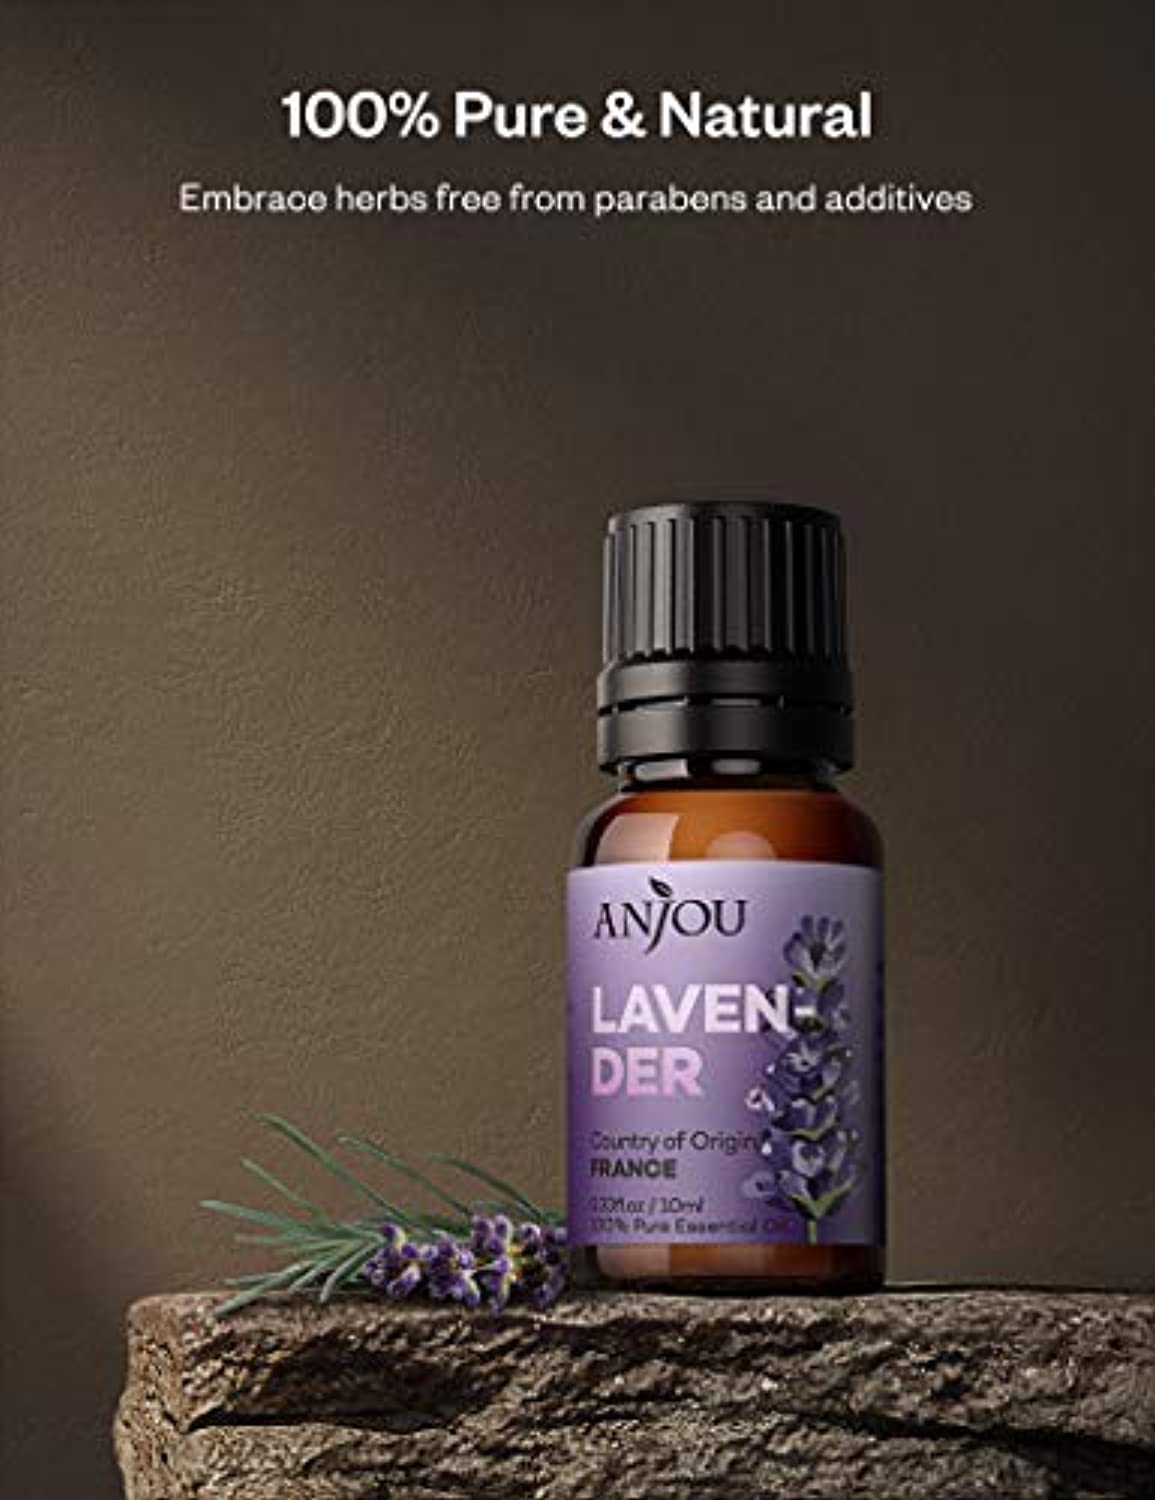 Juego de aceites esenciales, kit de aceites esenciales de aromaterapia para  difusor, humidificador, masaje, cuidado de la piel (12 x 0.2 onzas